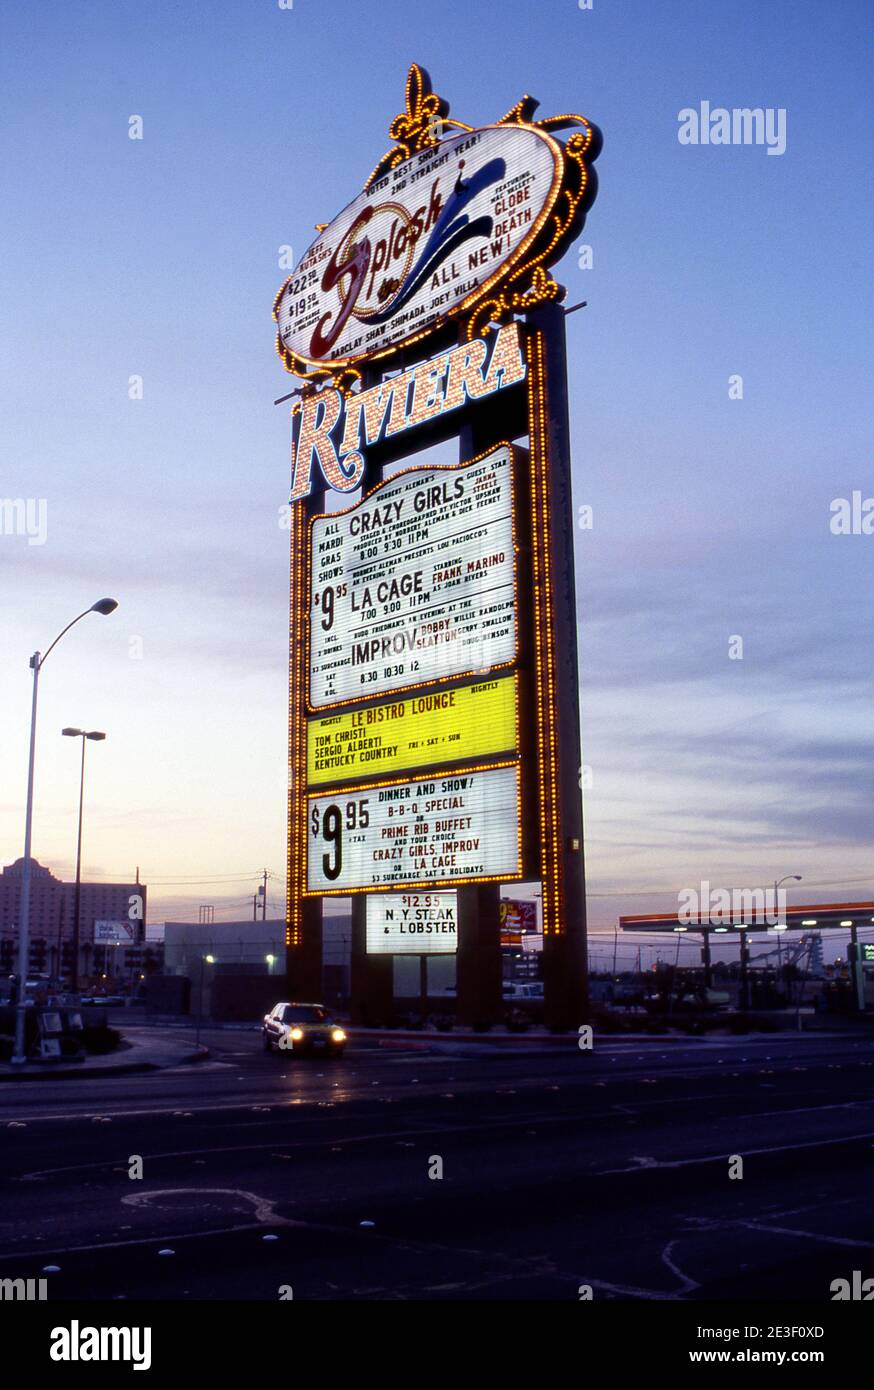 Riviera Hotel, Las Vegas Boulevard, looking northeast — Calisphere